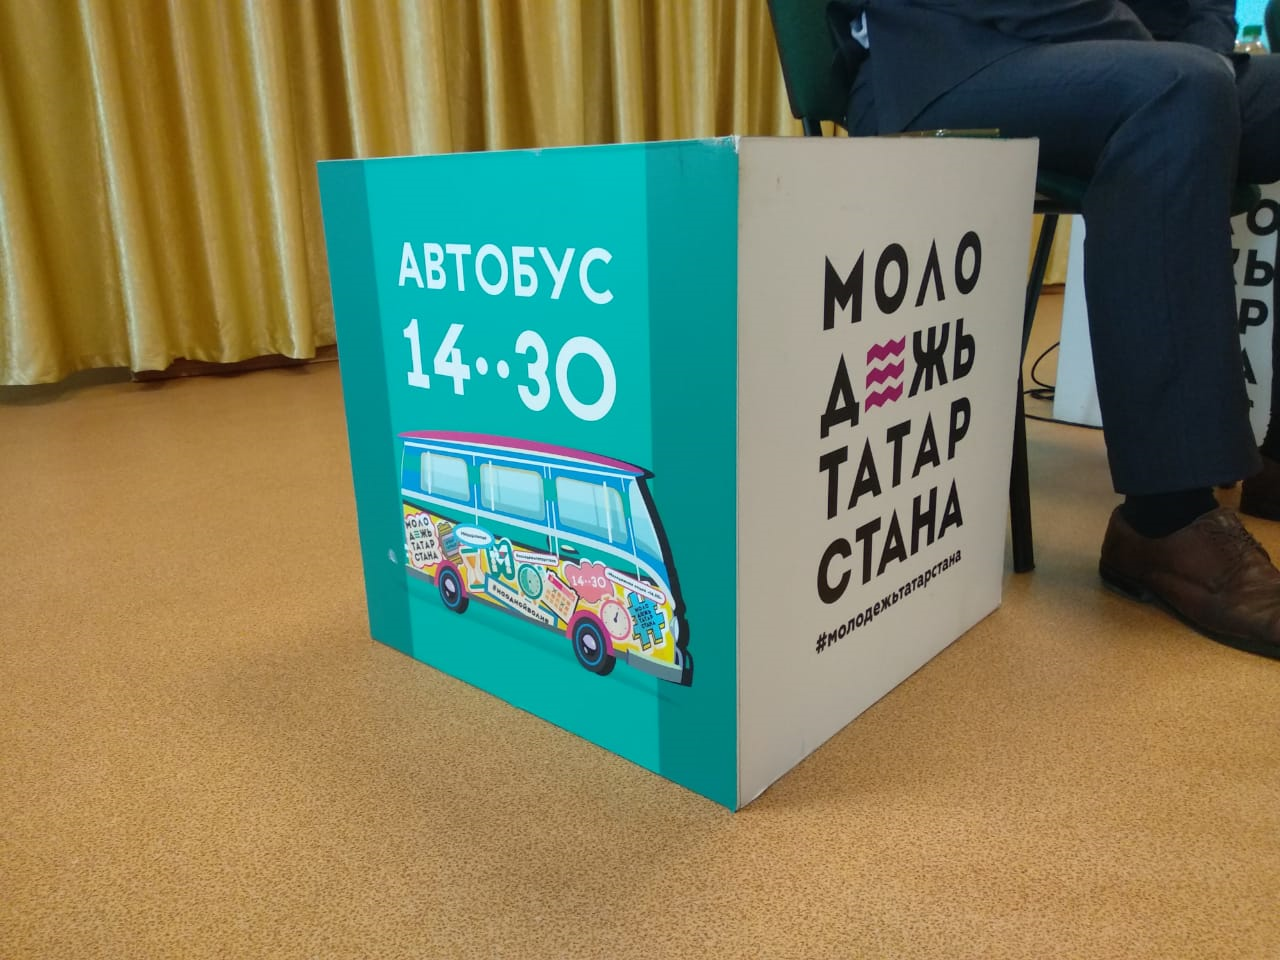 Высокогорский район посетил специализированный автобус «Автобус 14..30»